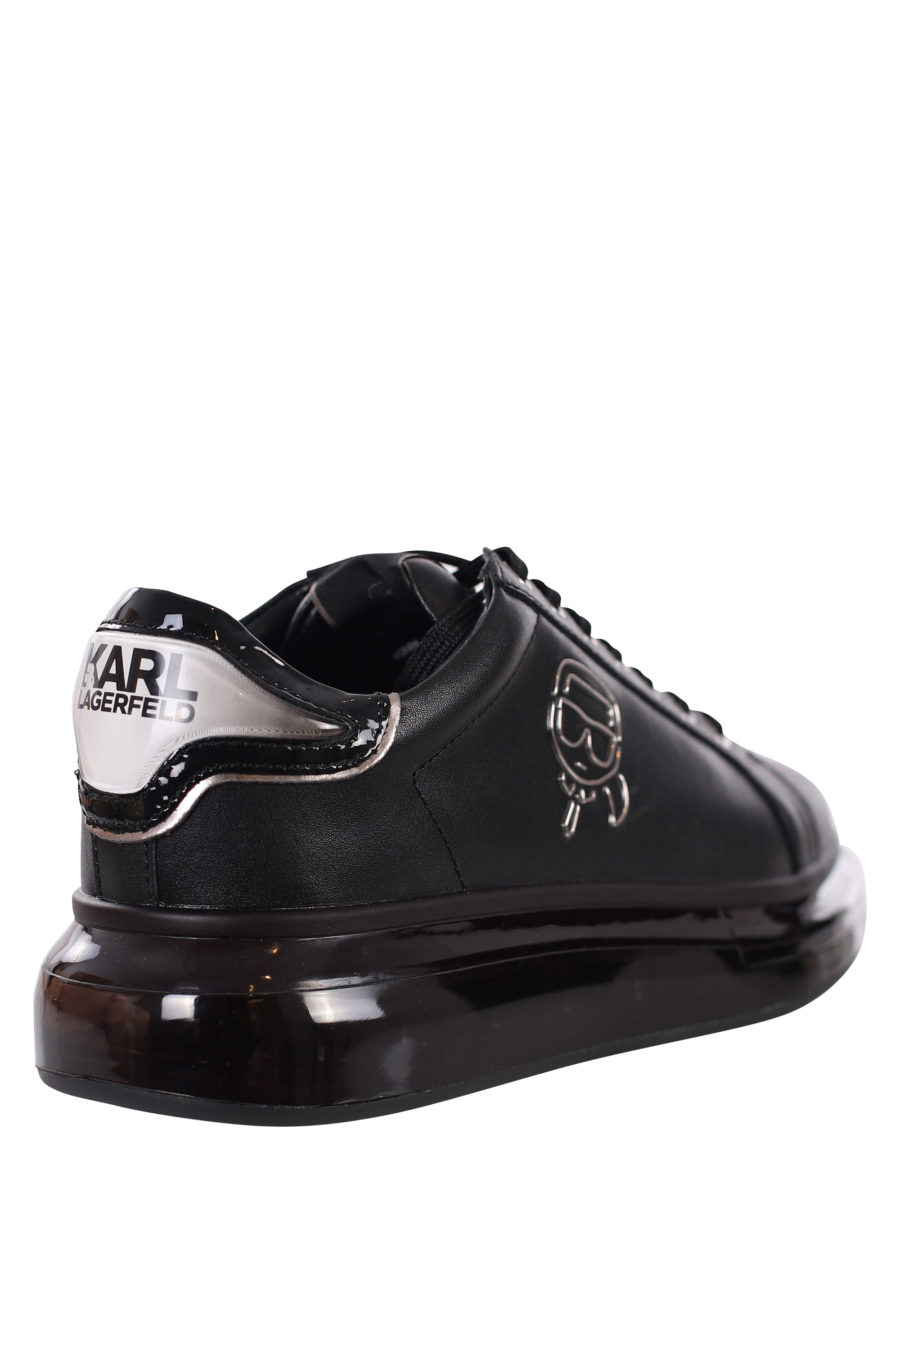 Zapatillas negras con logo silueta negro y suela negra - IMG 0415